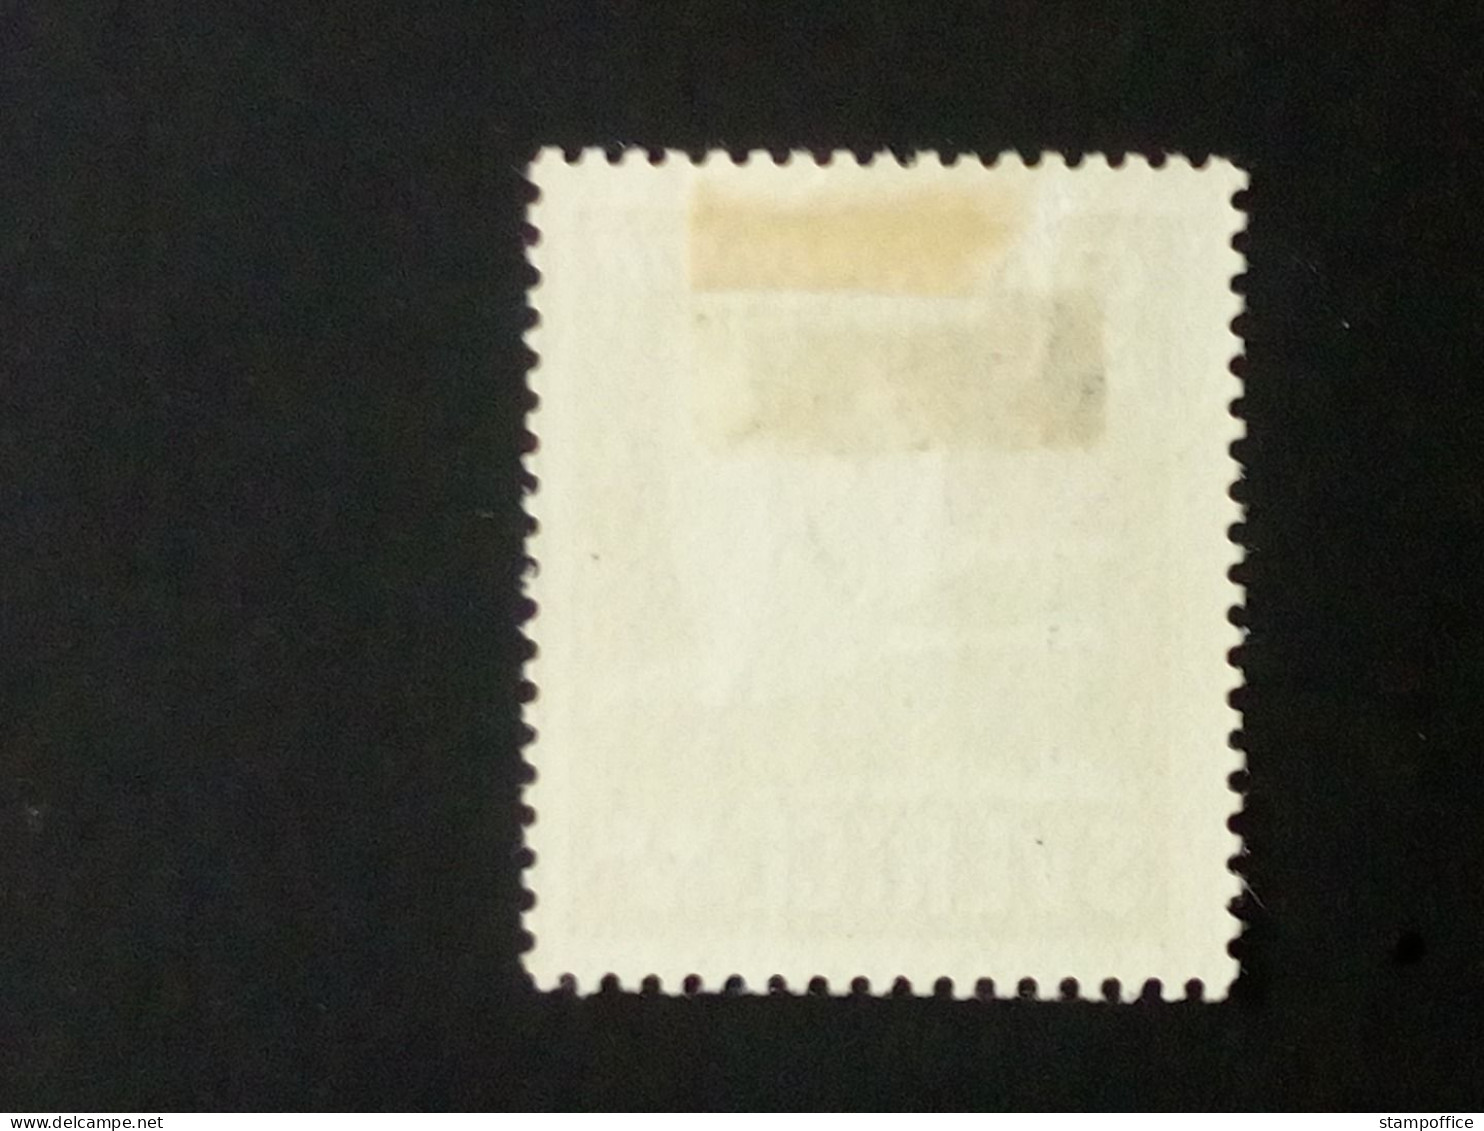 SCHWEDEN MI-NR. 290 B POSTFRISCH(MINT) MIT FALZ GÄNSE 1942 - Unused Stamps